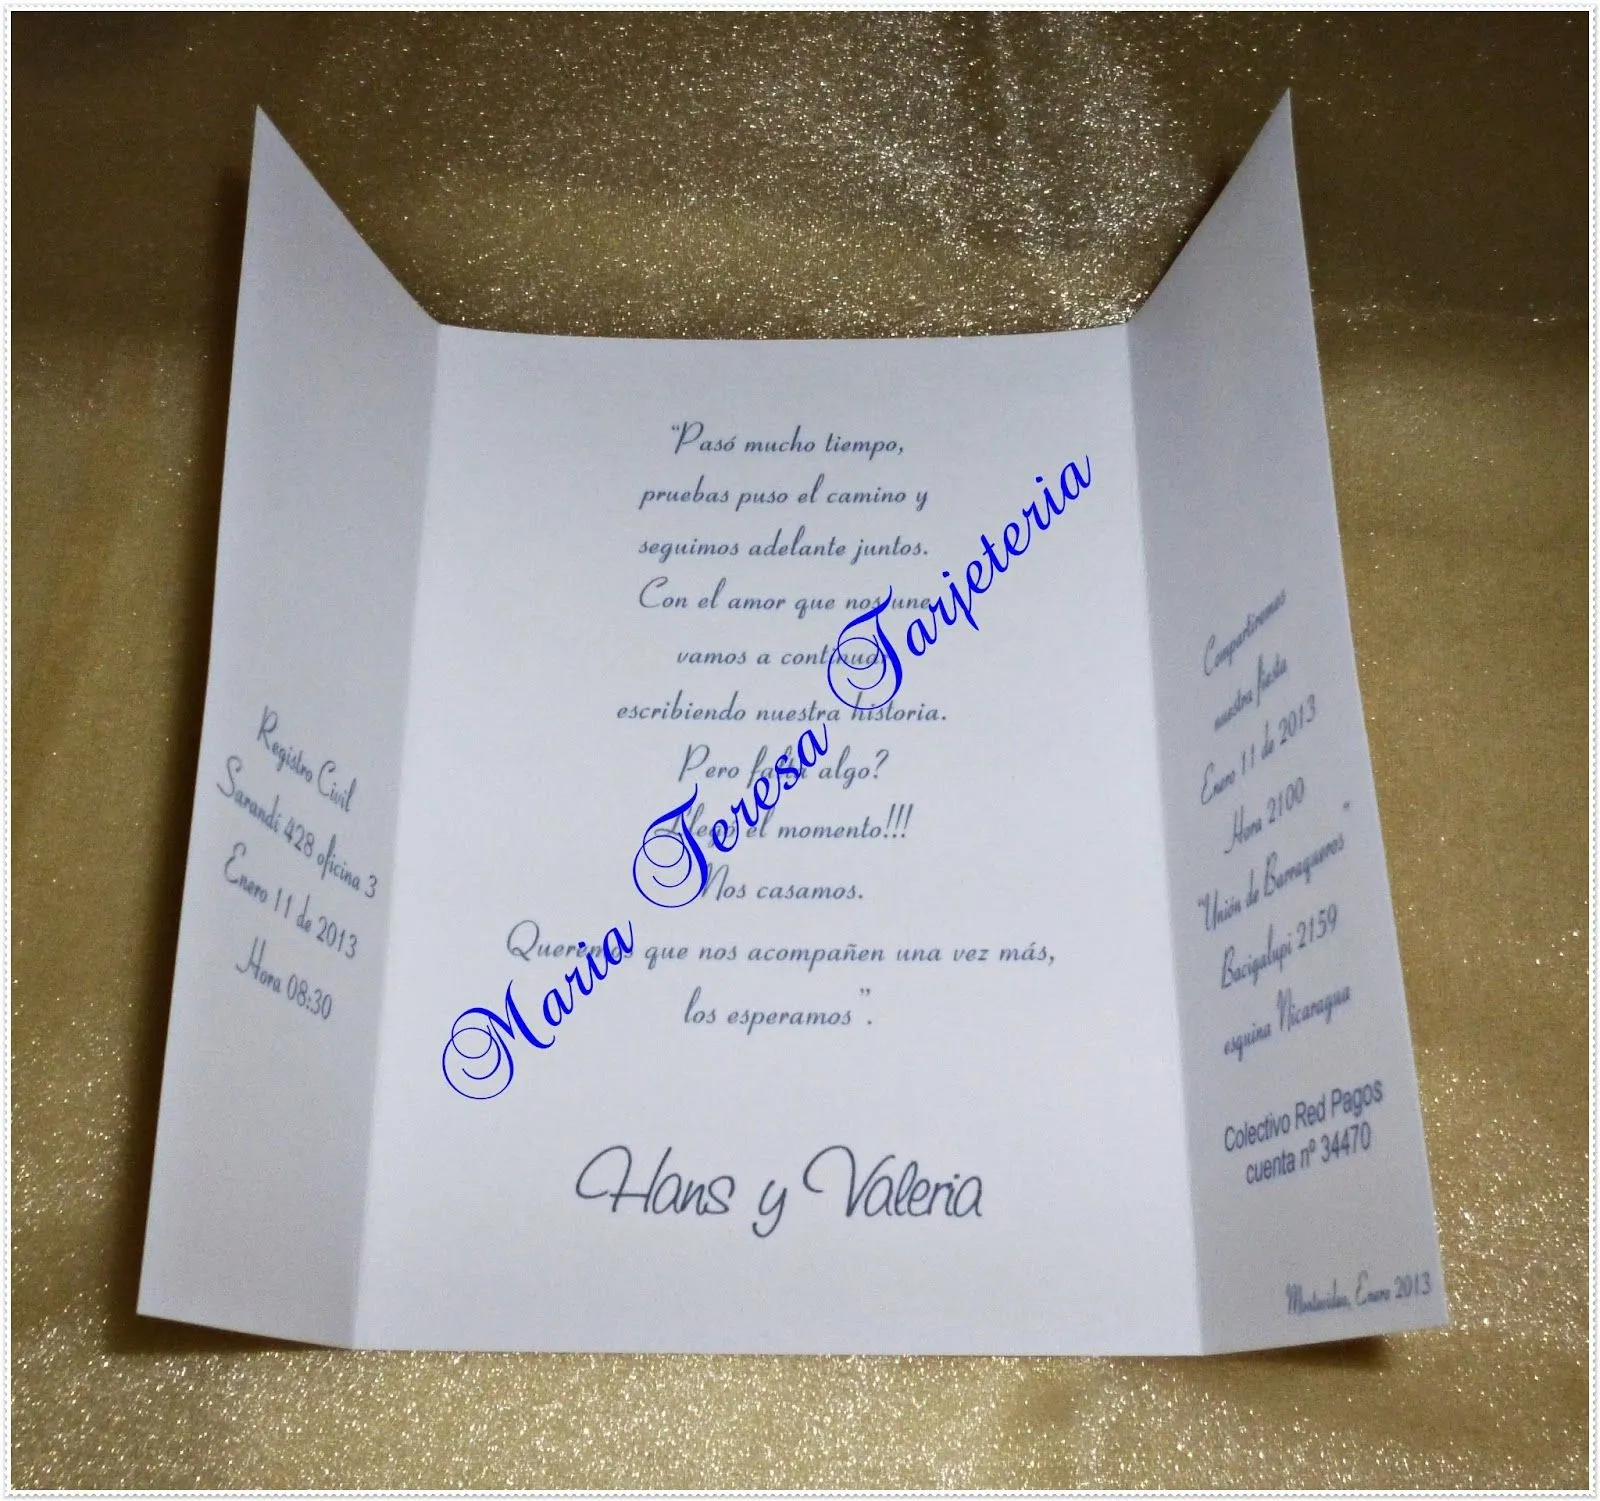 Imagenes de tarjetas de invitación para una boda - Imagui